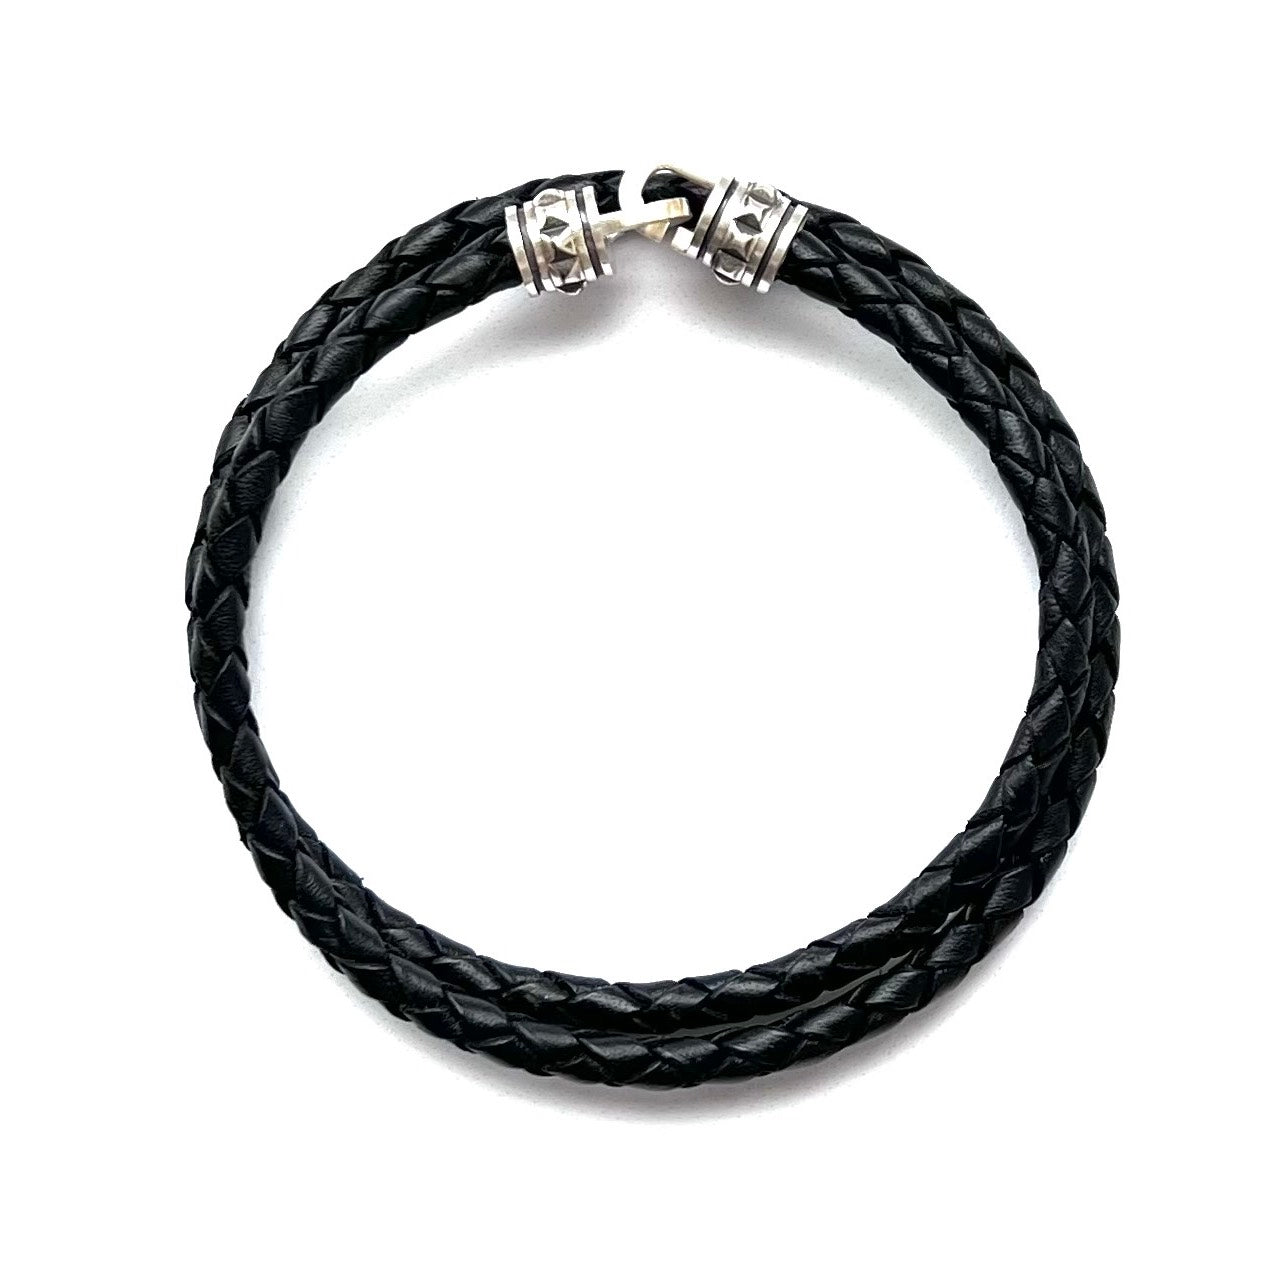 Beltran leather bracelet